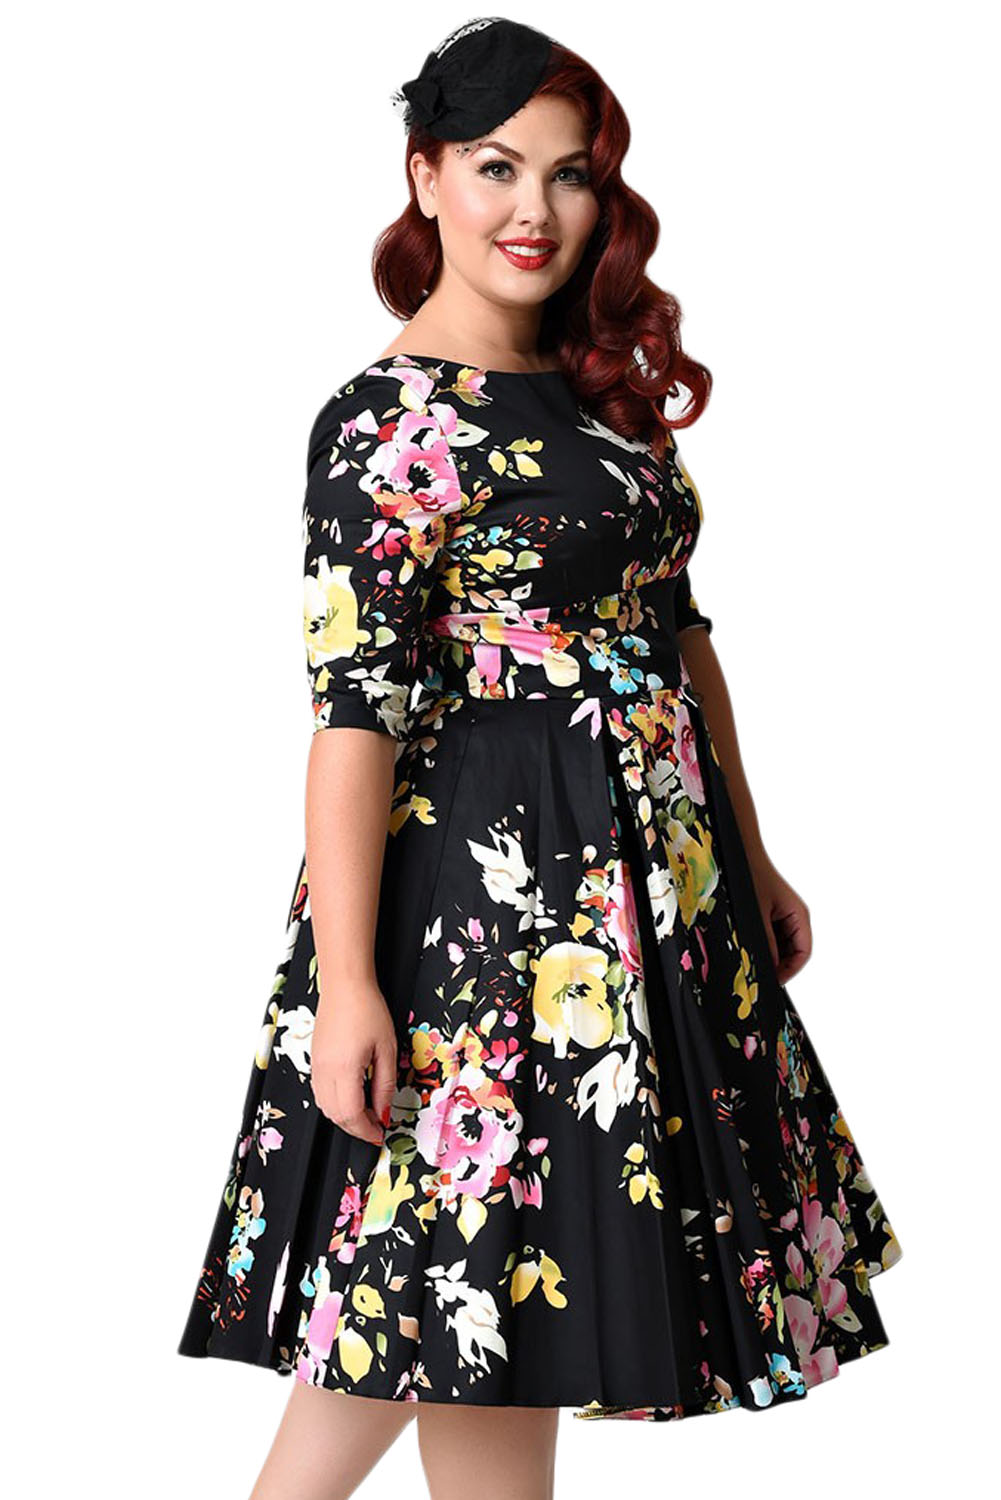 BY61702-2 Black Vintage Style Floral Half Sleeve Swing Dress